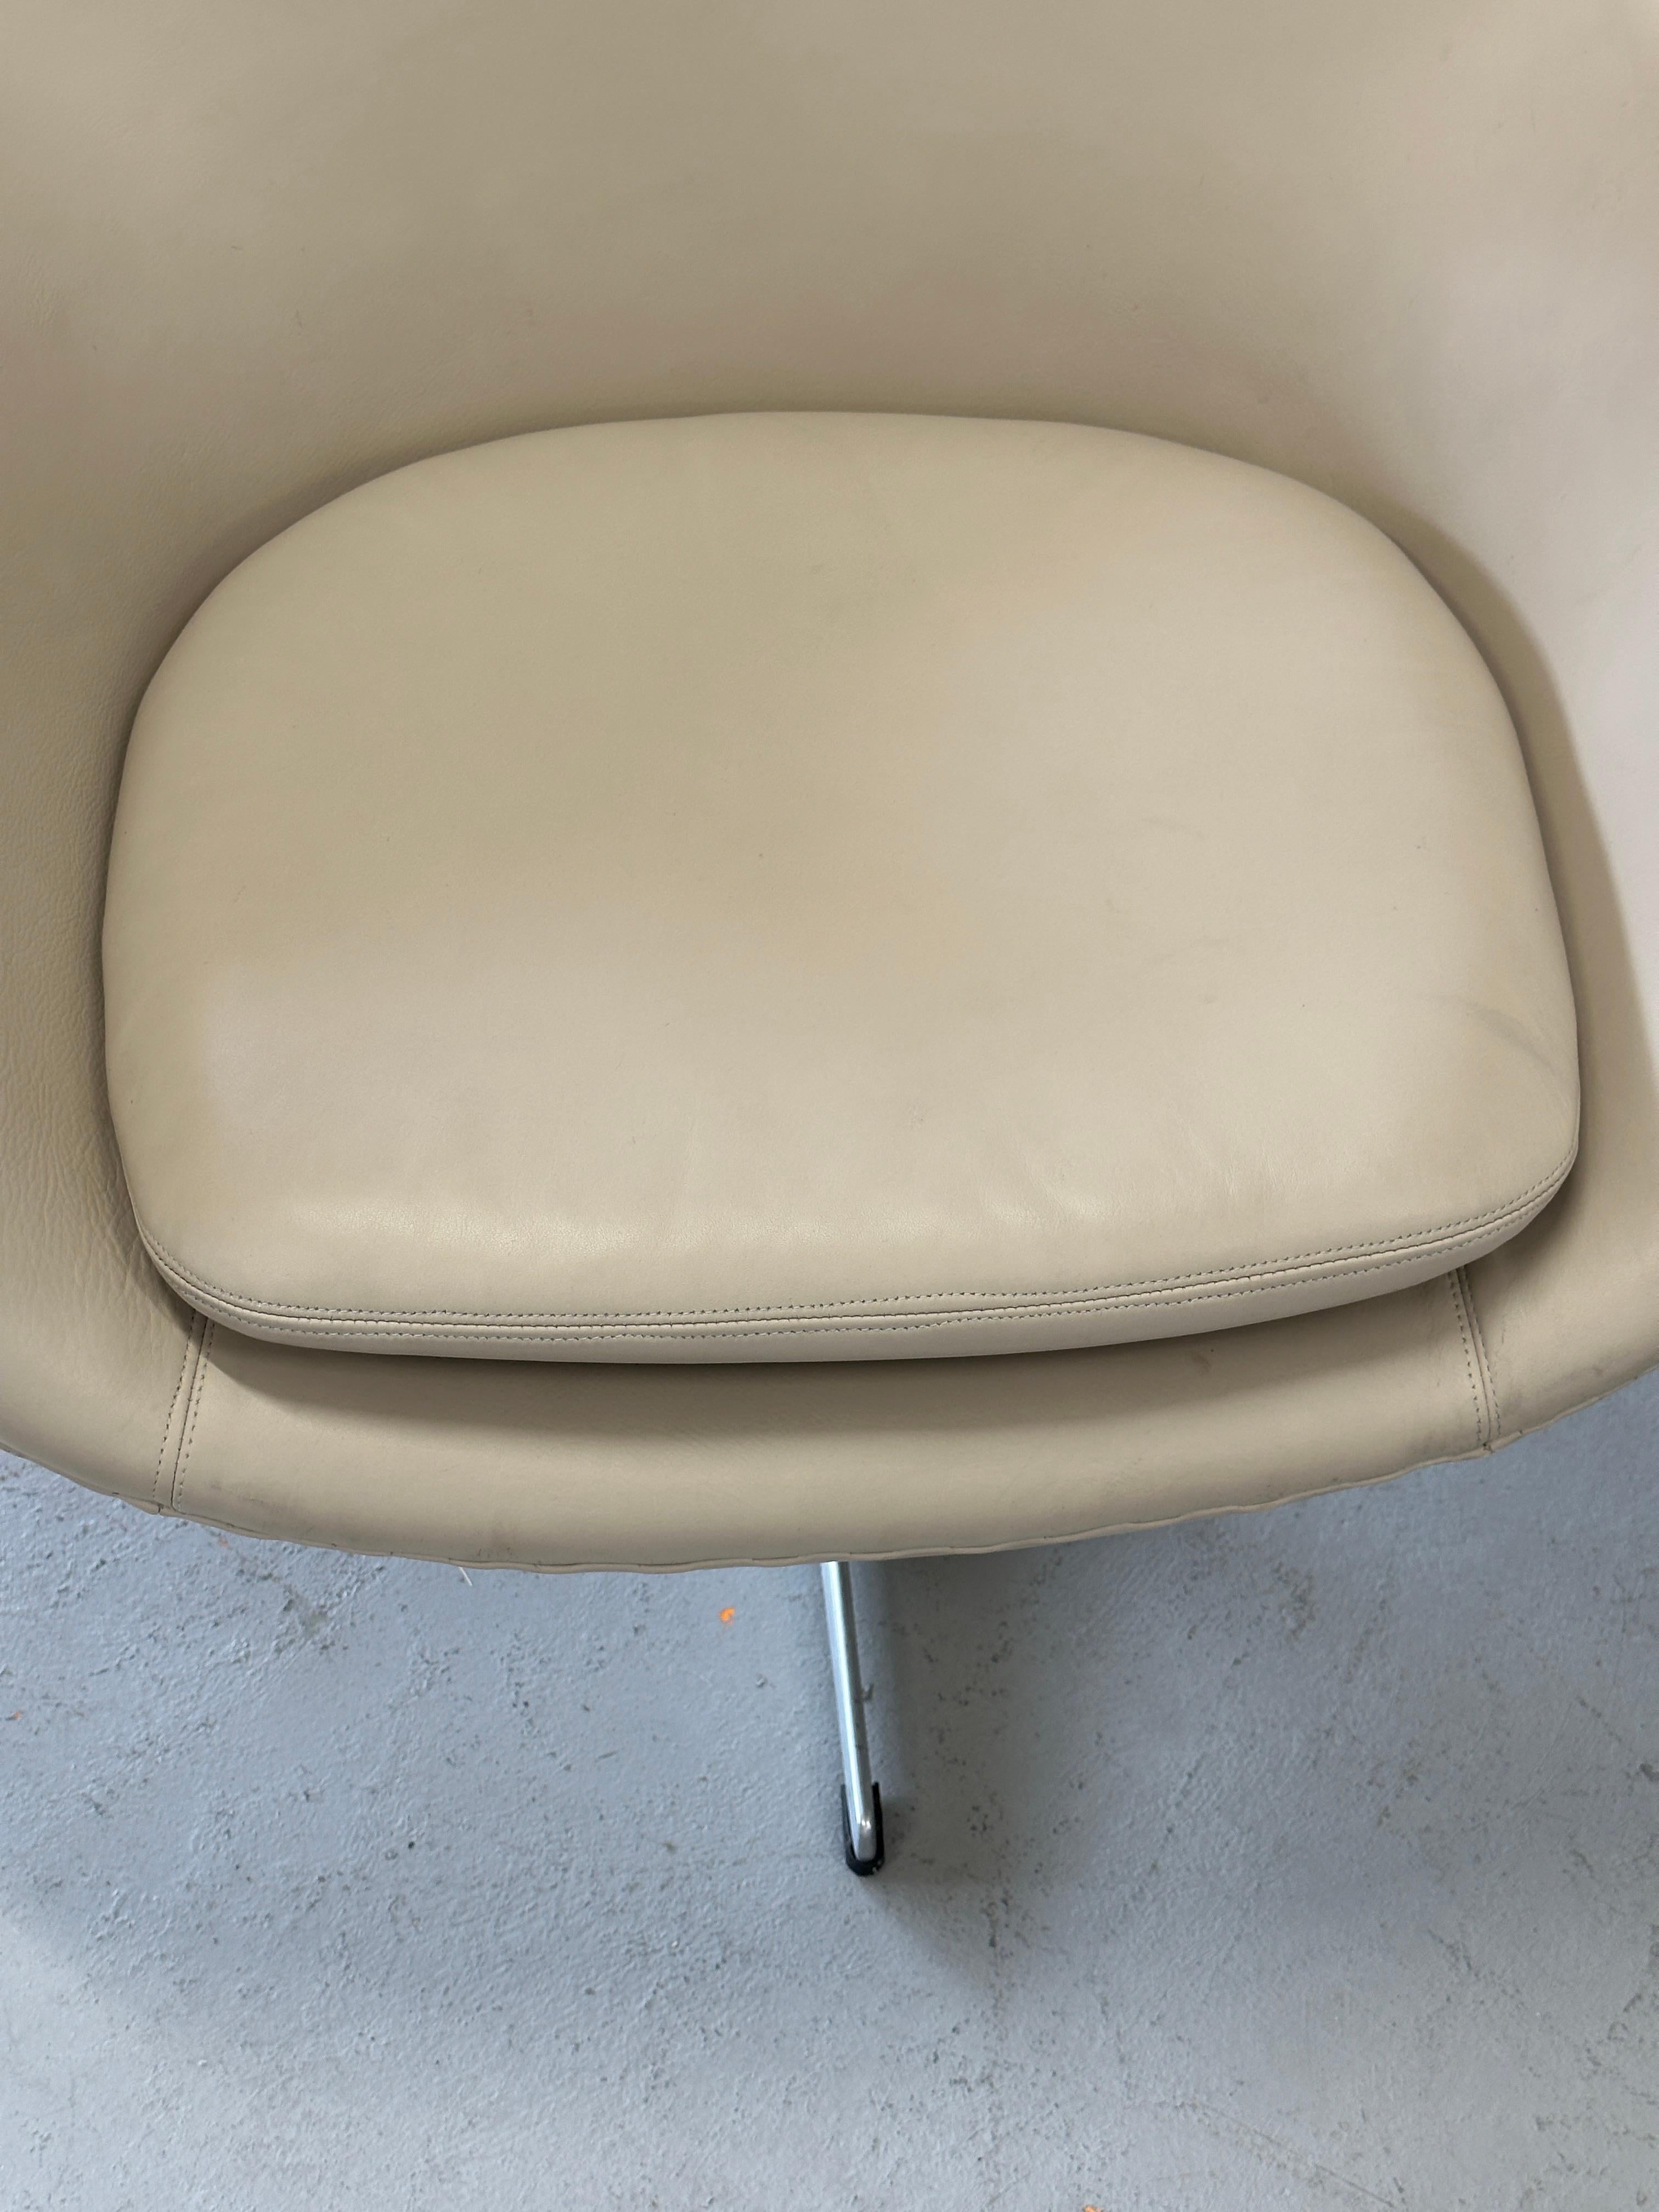 1966 Arne Jacobsen for Fritz Hansen Egg Chair in Leather For Sale 3